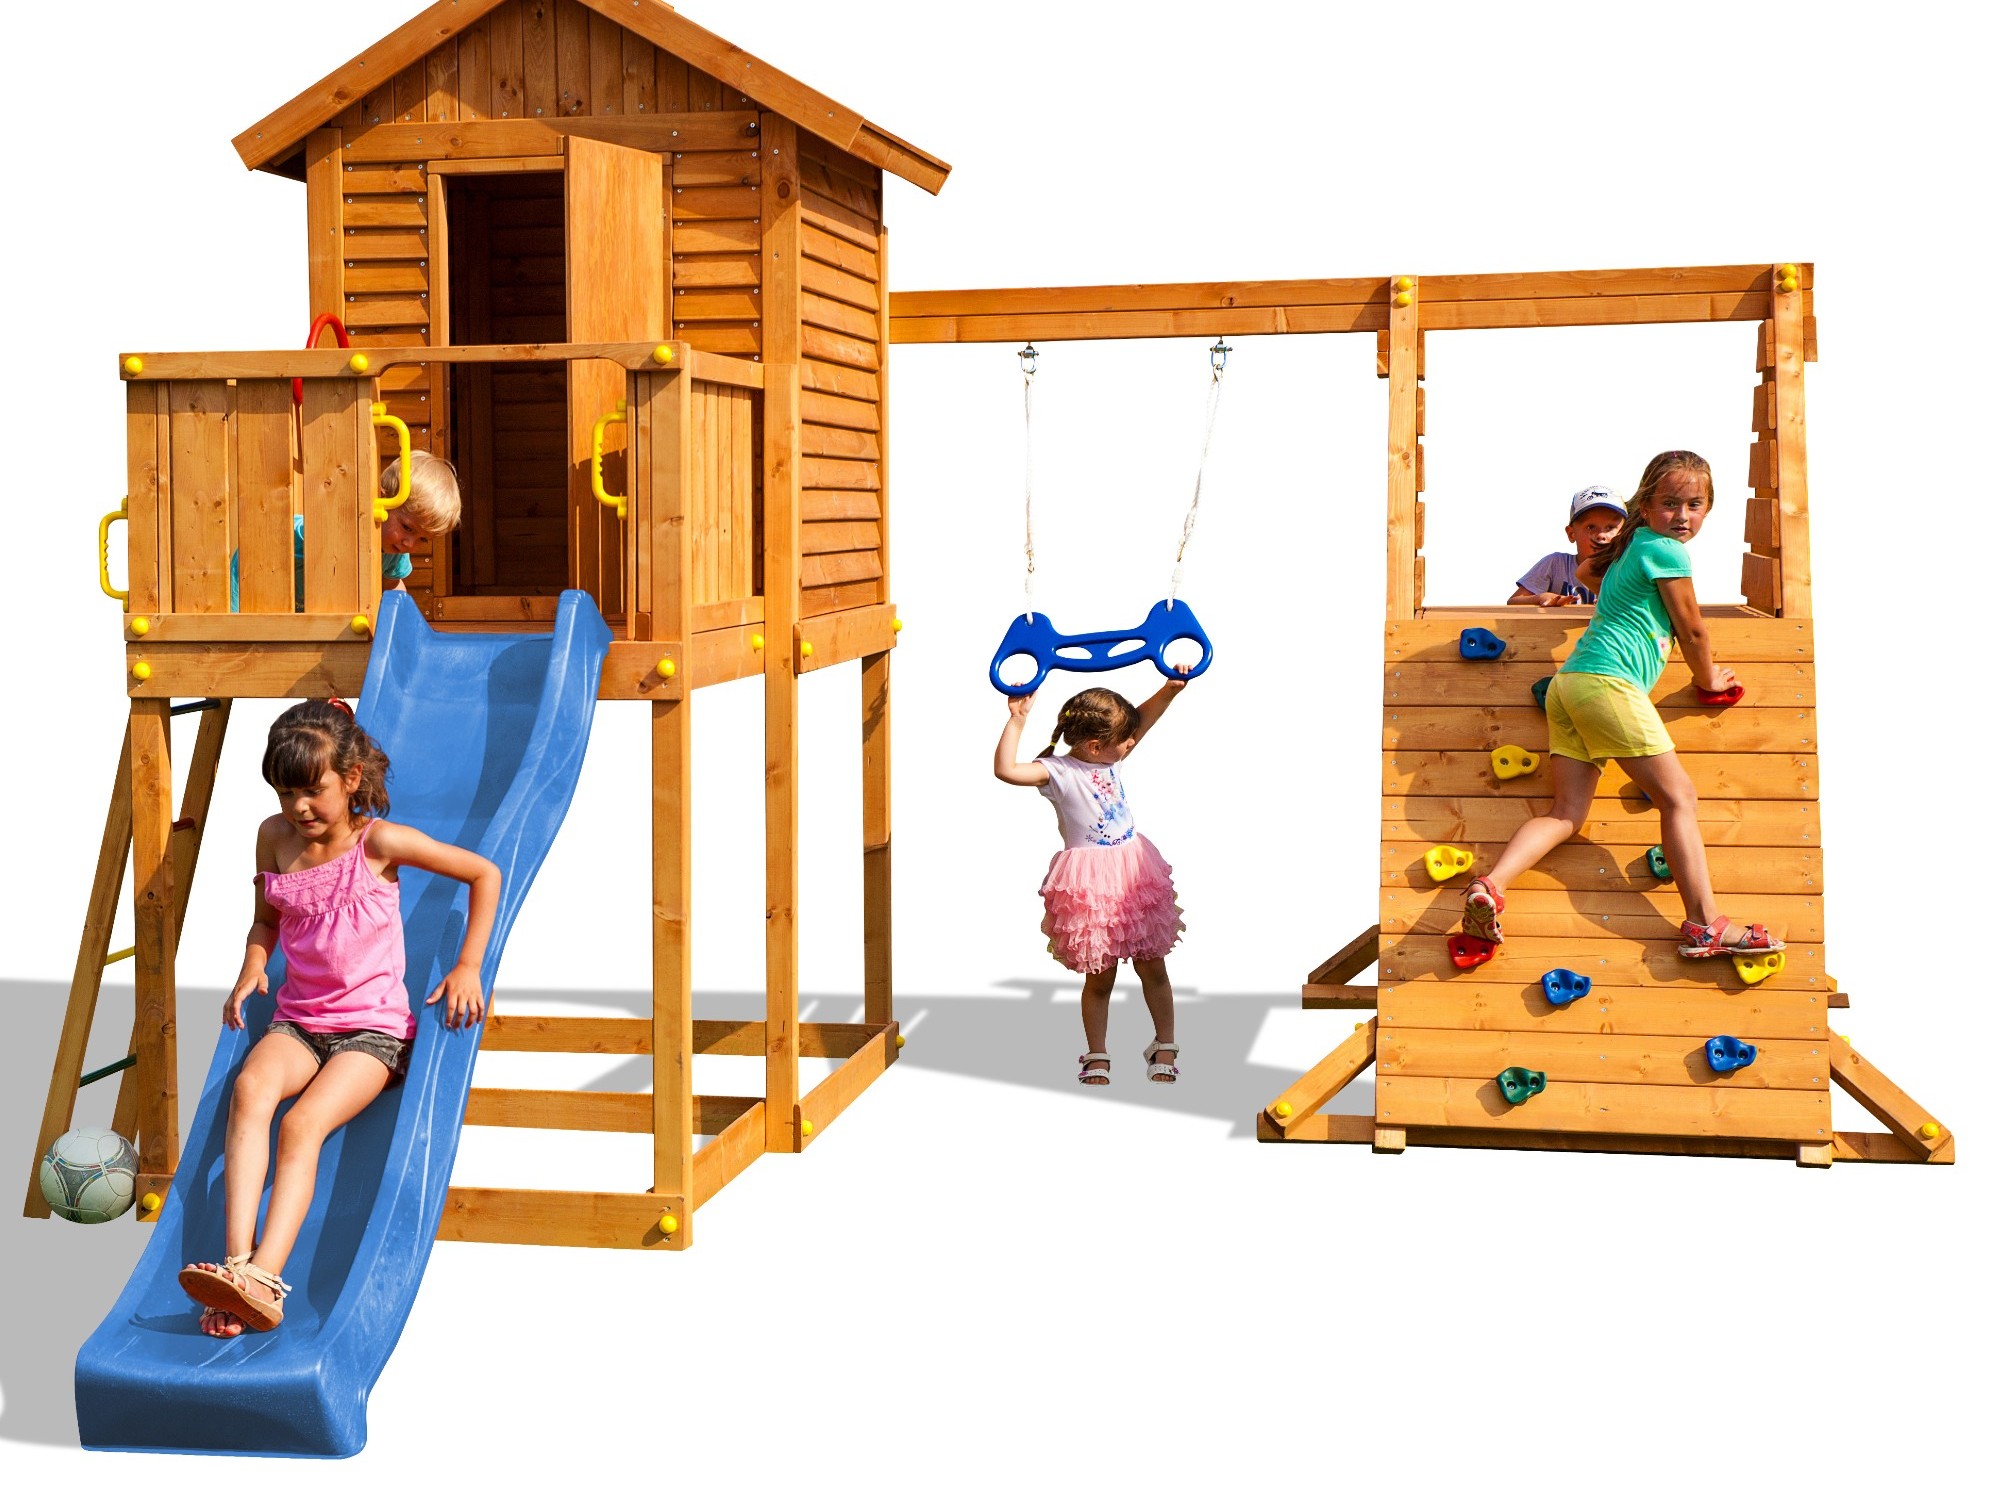 Plac zabaw drewniany duy MyHouse Spider domek, hutawka, zjedalnia, drabinka, cianka i siatka wspinaczkowa